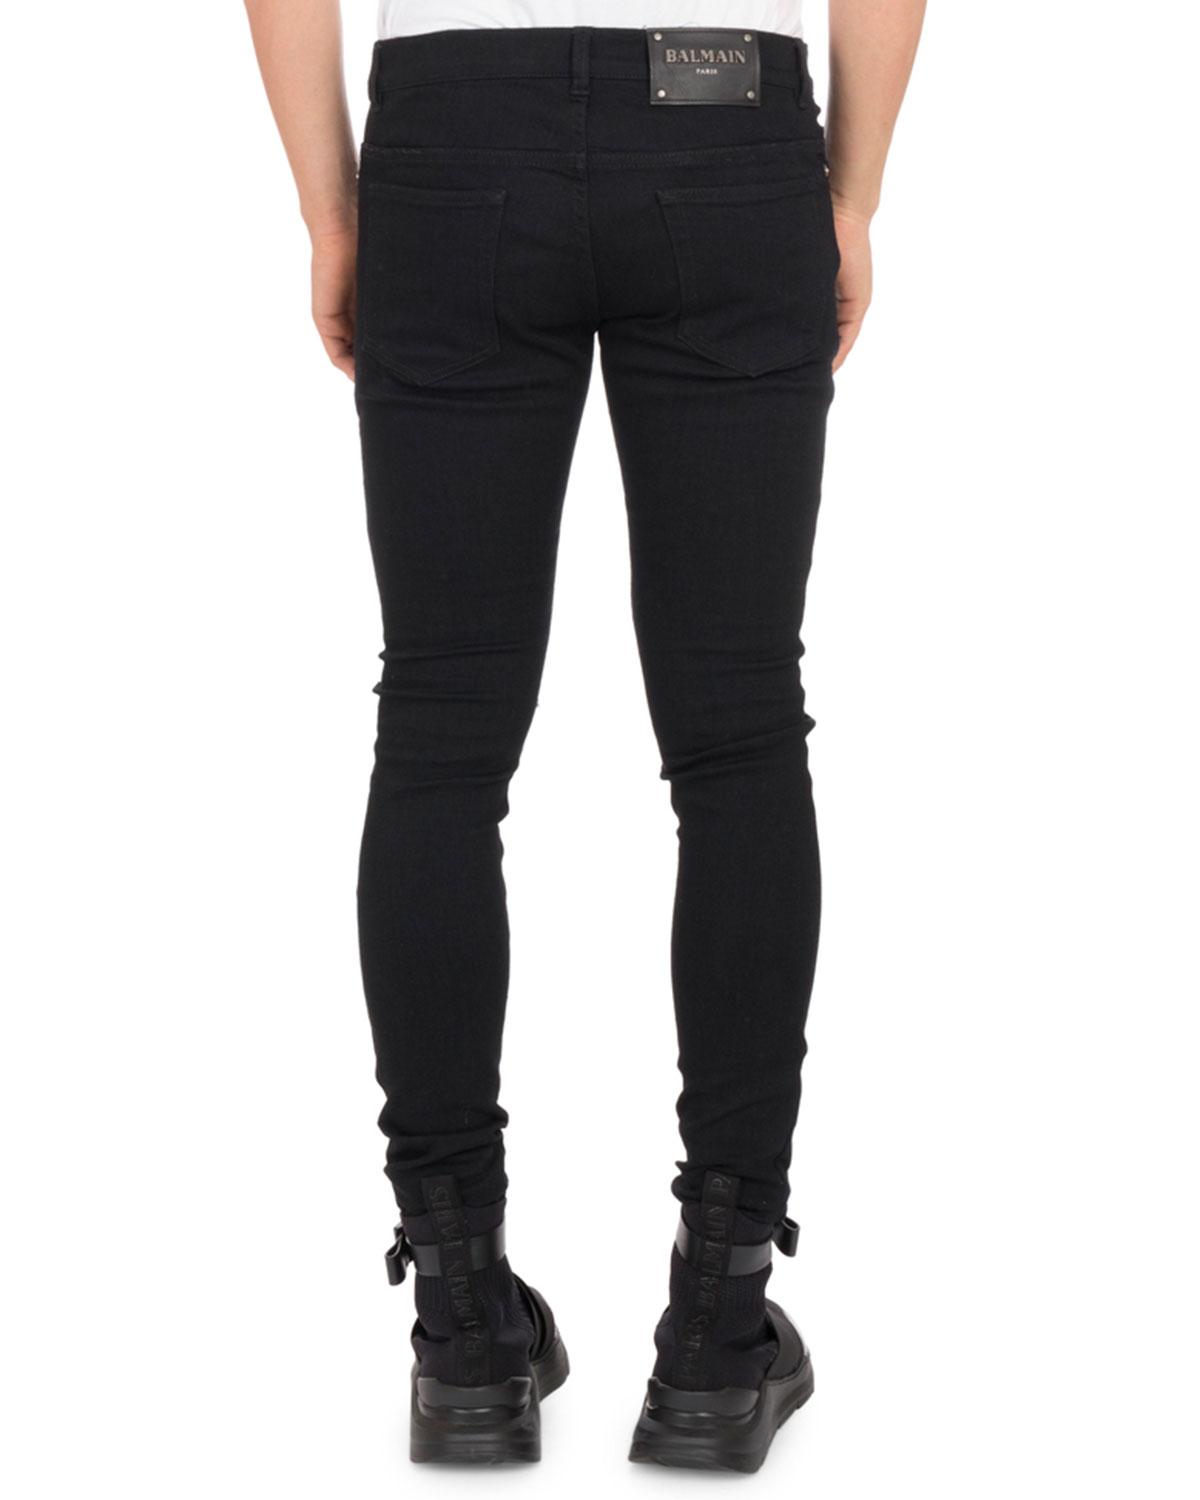 Balmain Denim Men's Ultra Skinny Destroyed Jeans in Black for Men - Lyst